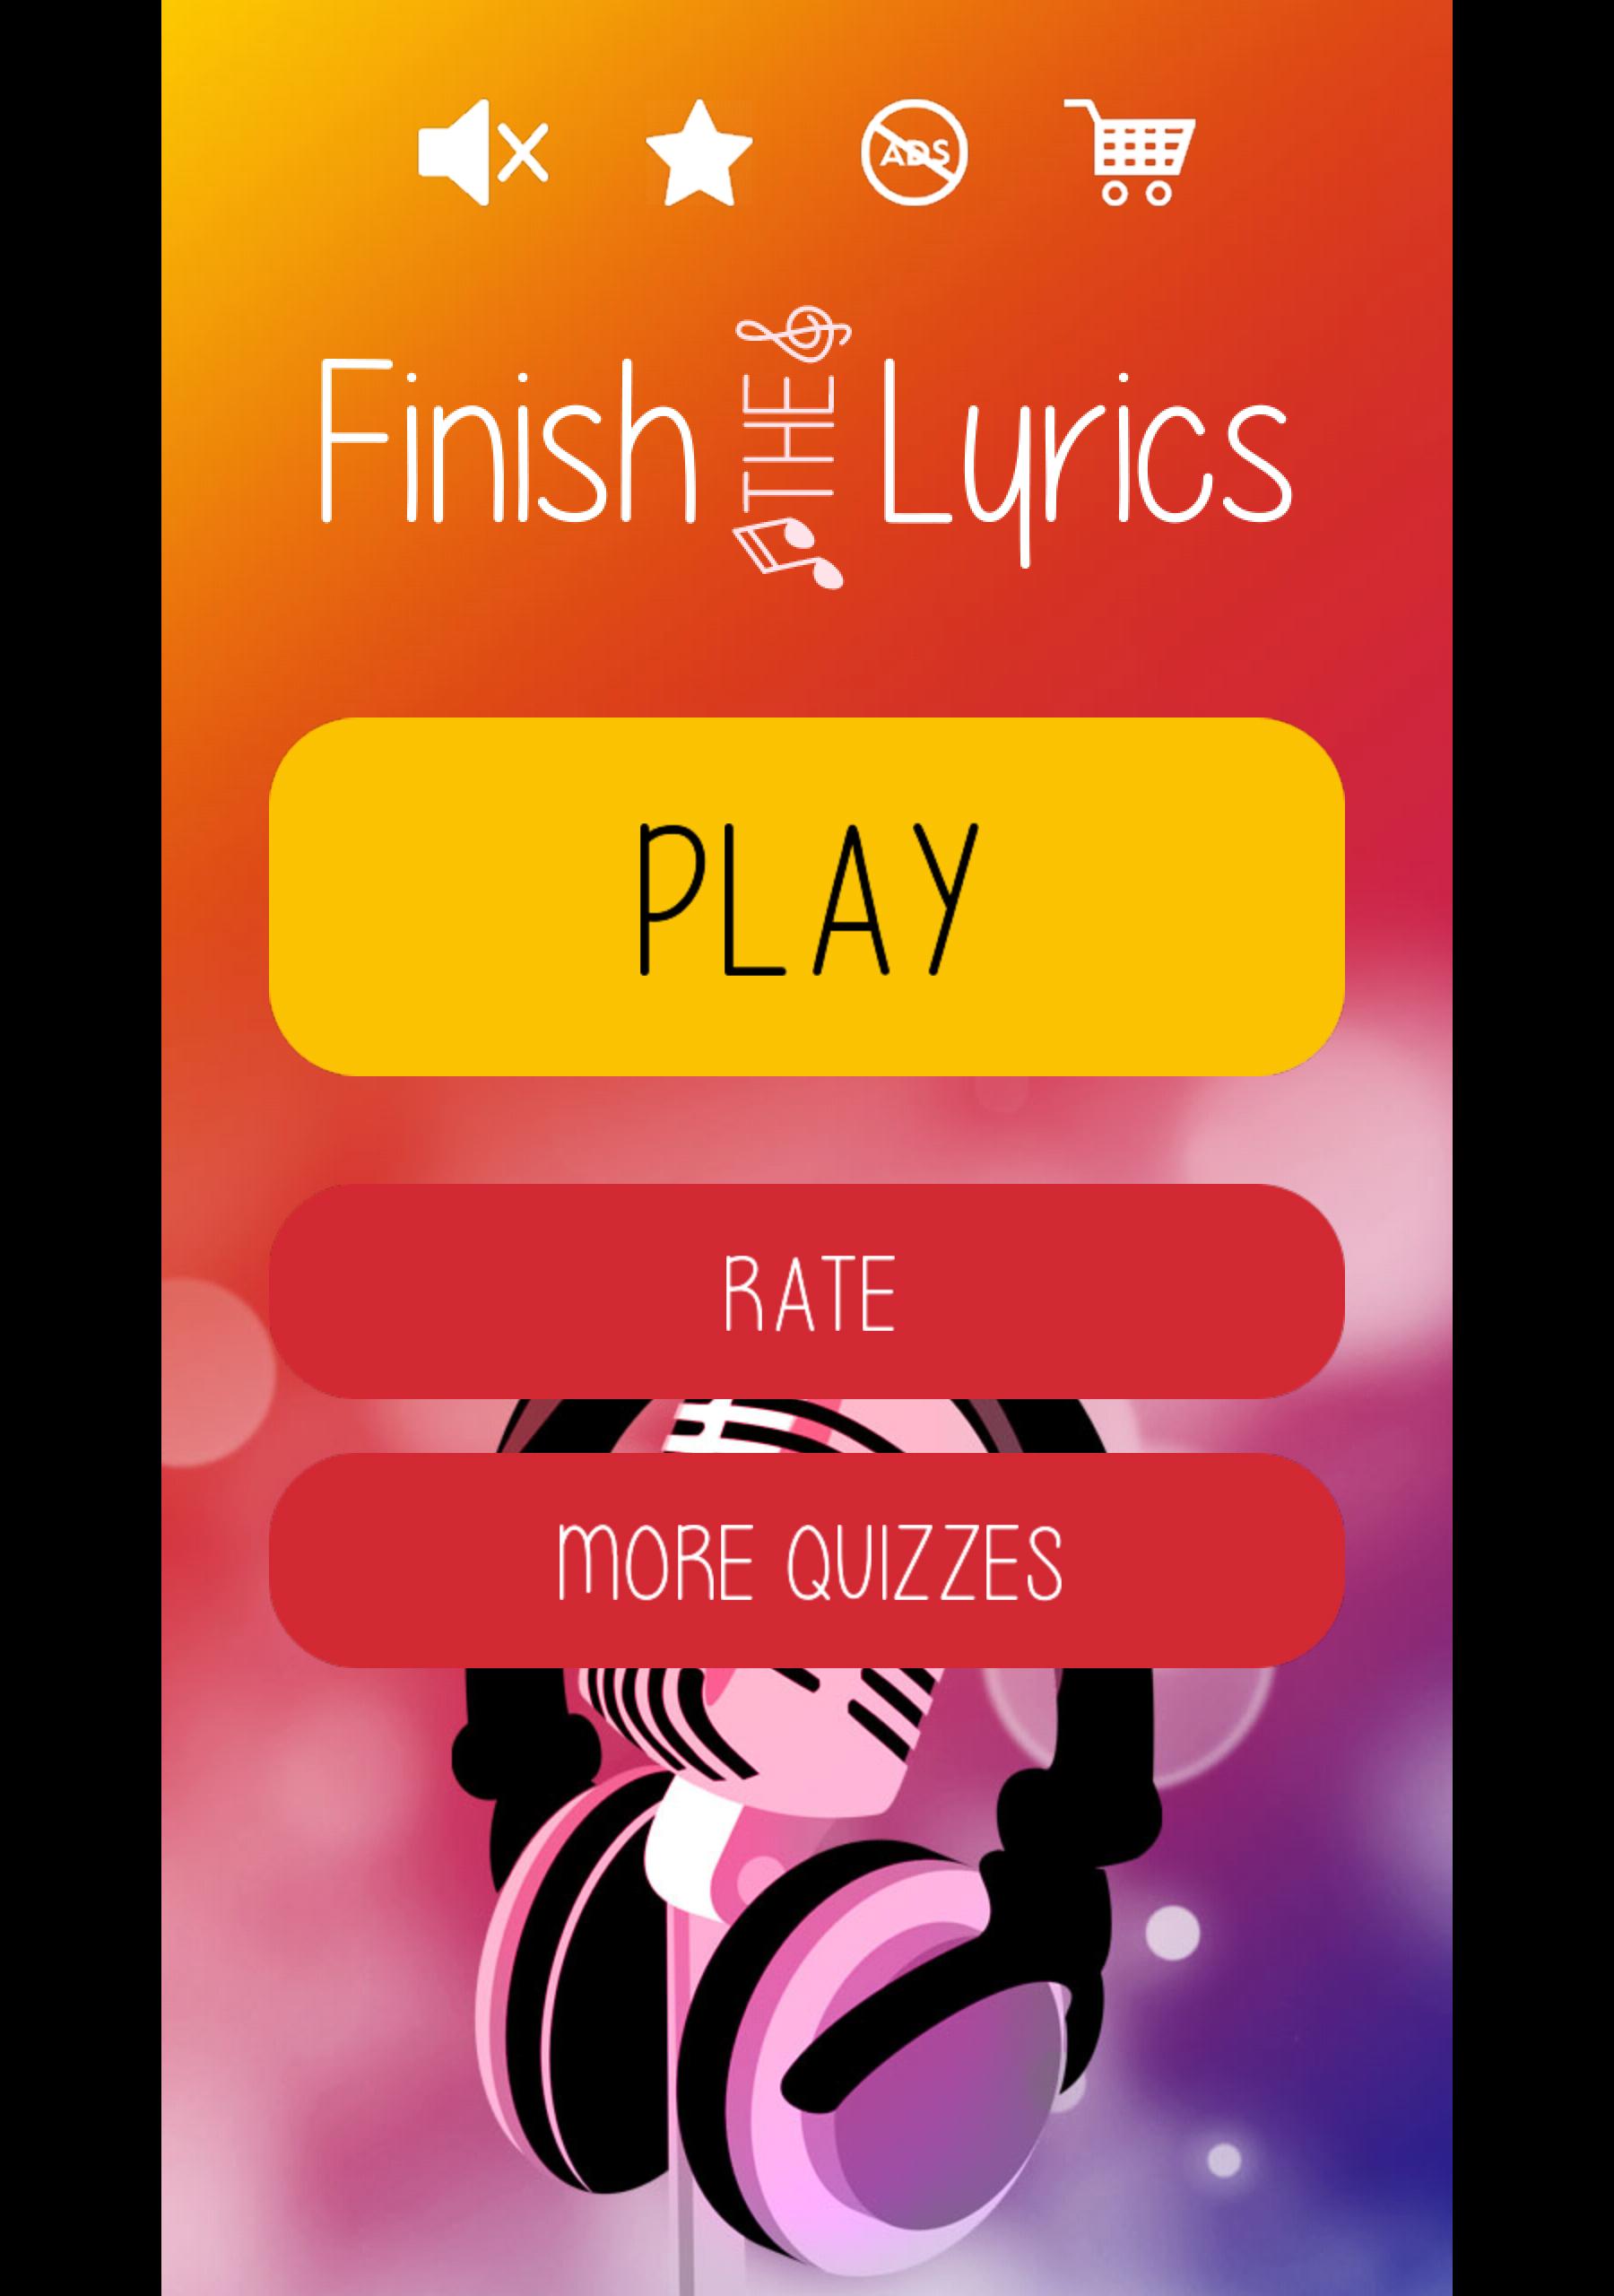 Finish The Lyrics Free Music Quiz App 3.0.2 Screenshot 6